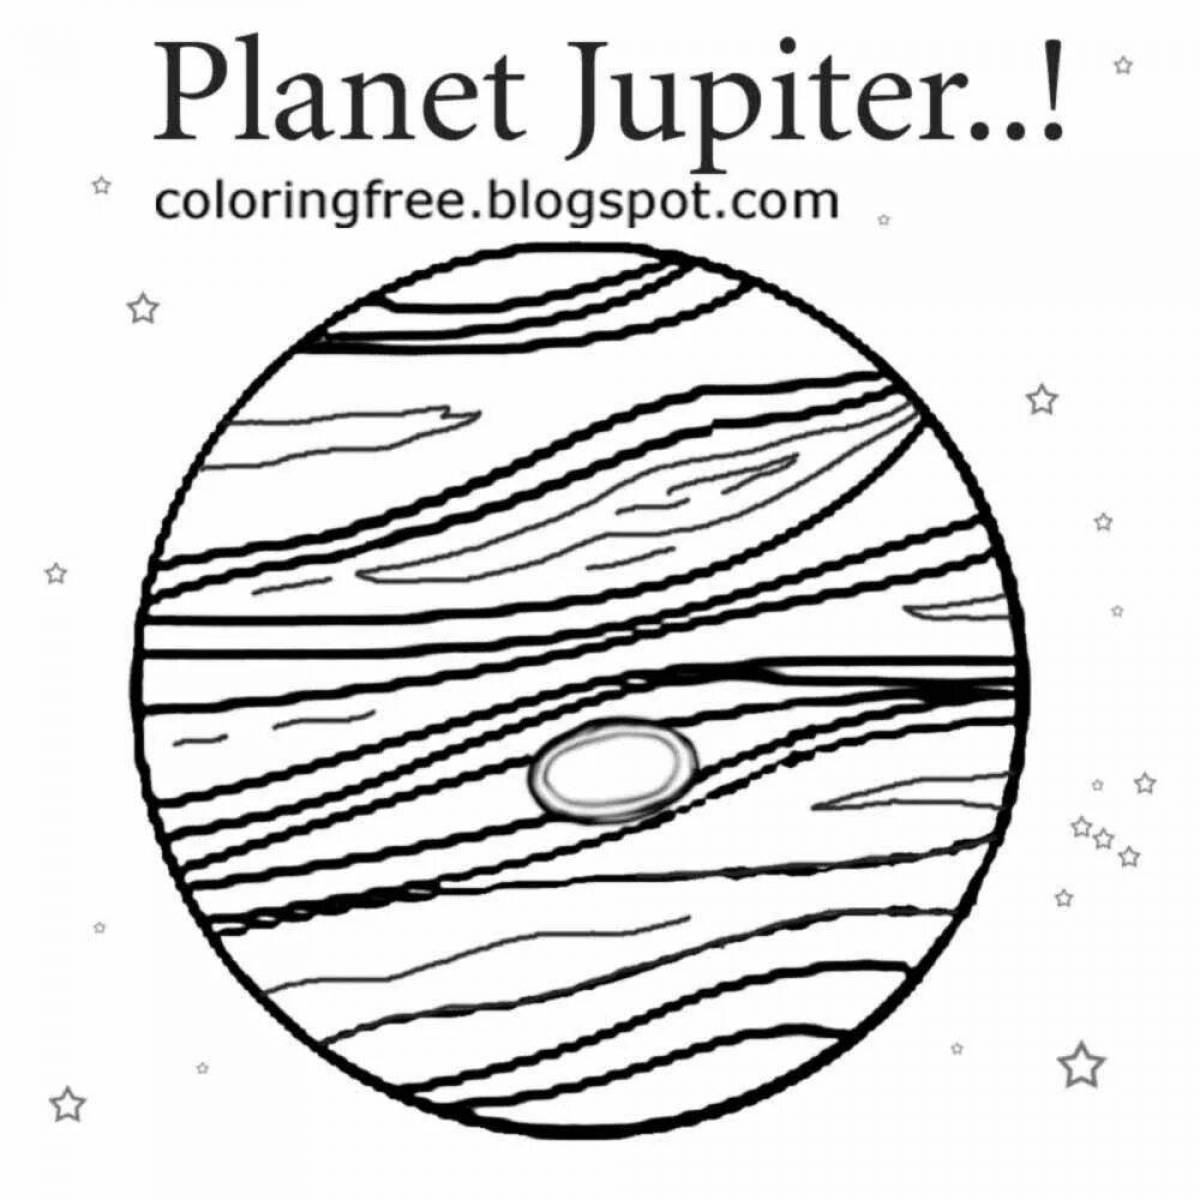 Exquisite jupiter coloring book